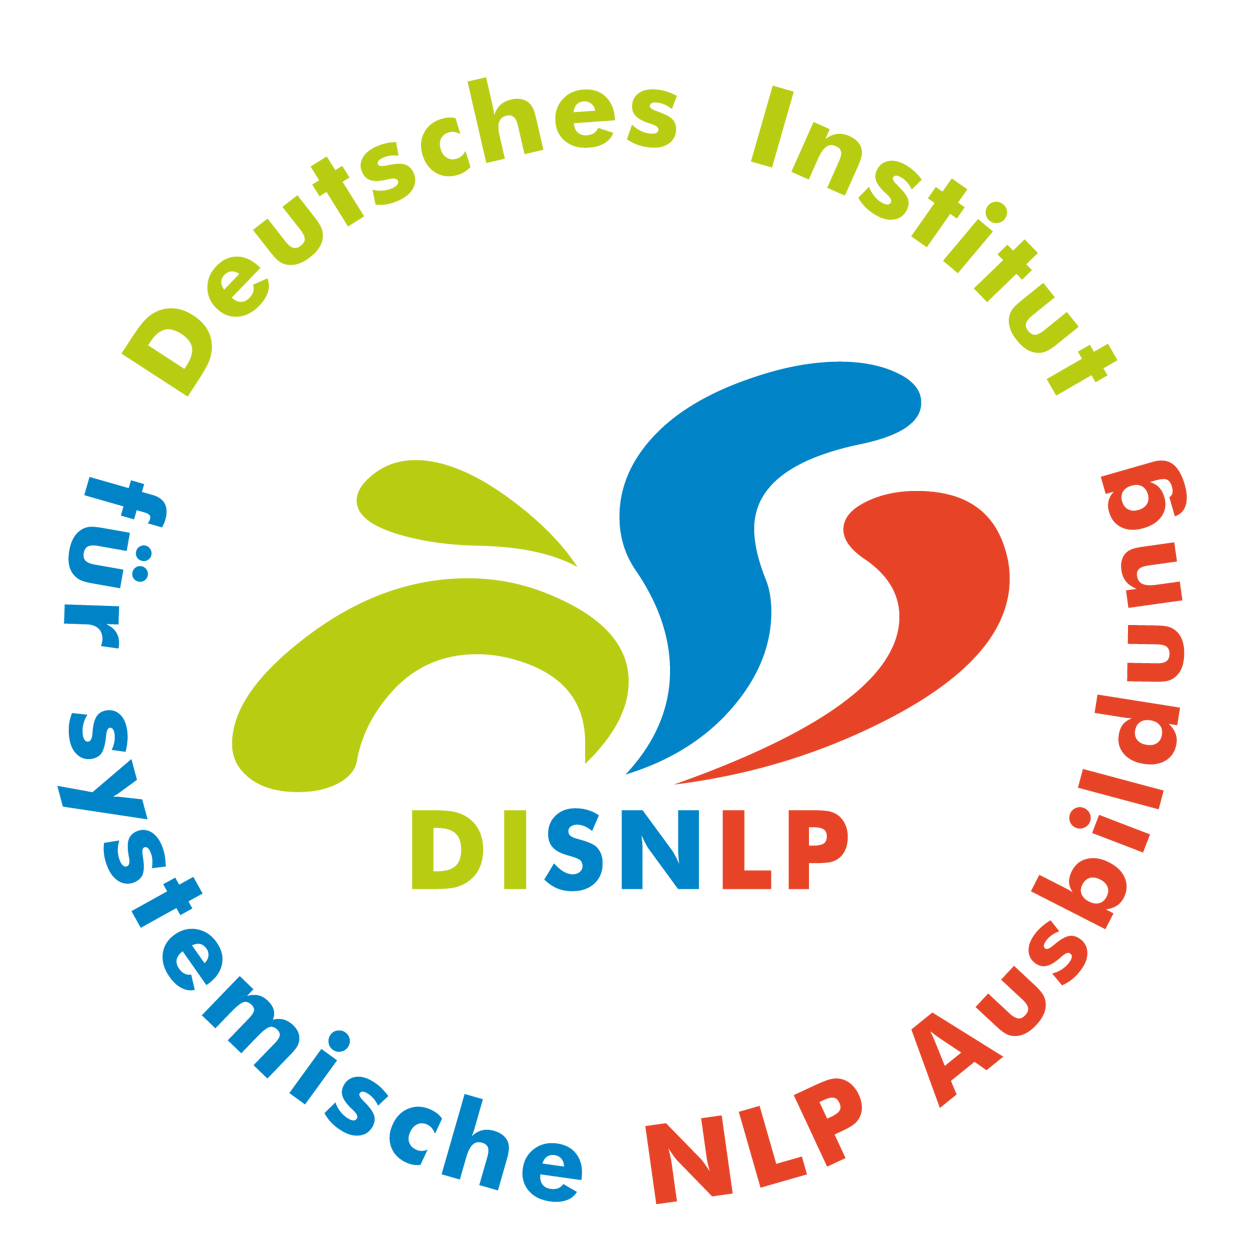 Seminar Selbstbewusstsein, Selbstvertrauen, Selbstwert, Selbstsicherheit stärken Darmstadt Hessen mit NLP Coaching Kurs für mehr Selbstbewusstsein